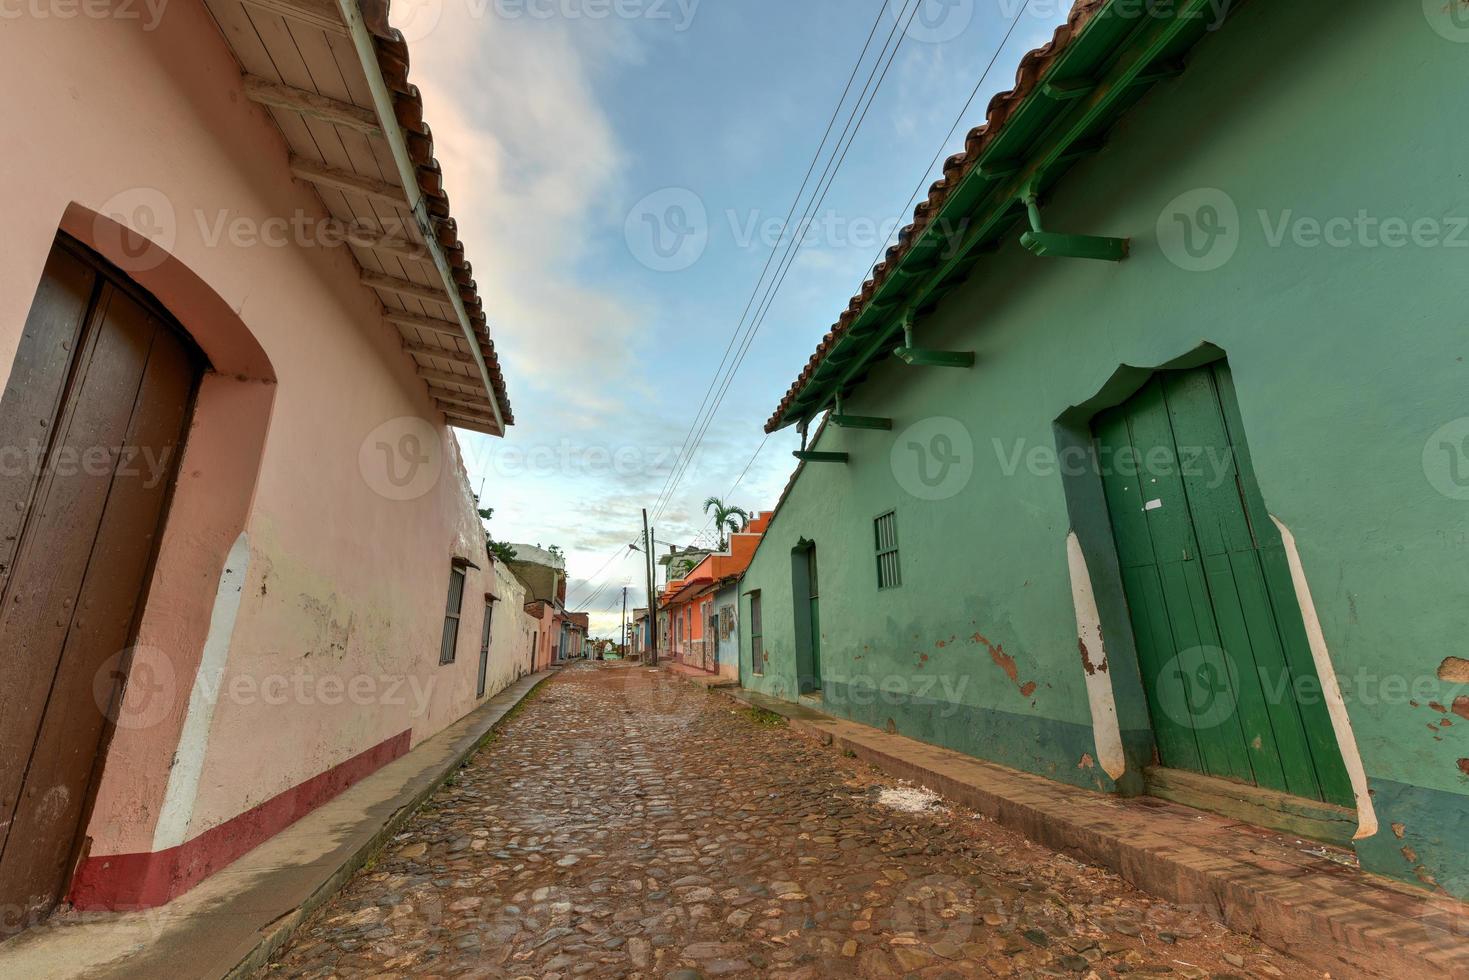 färgrik traditionell hus i de kolonial stad av trinidad i Kuba, en unesco värld arv webbplats. foto